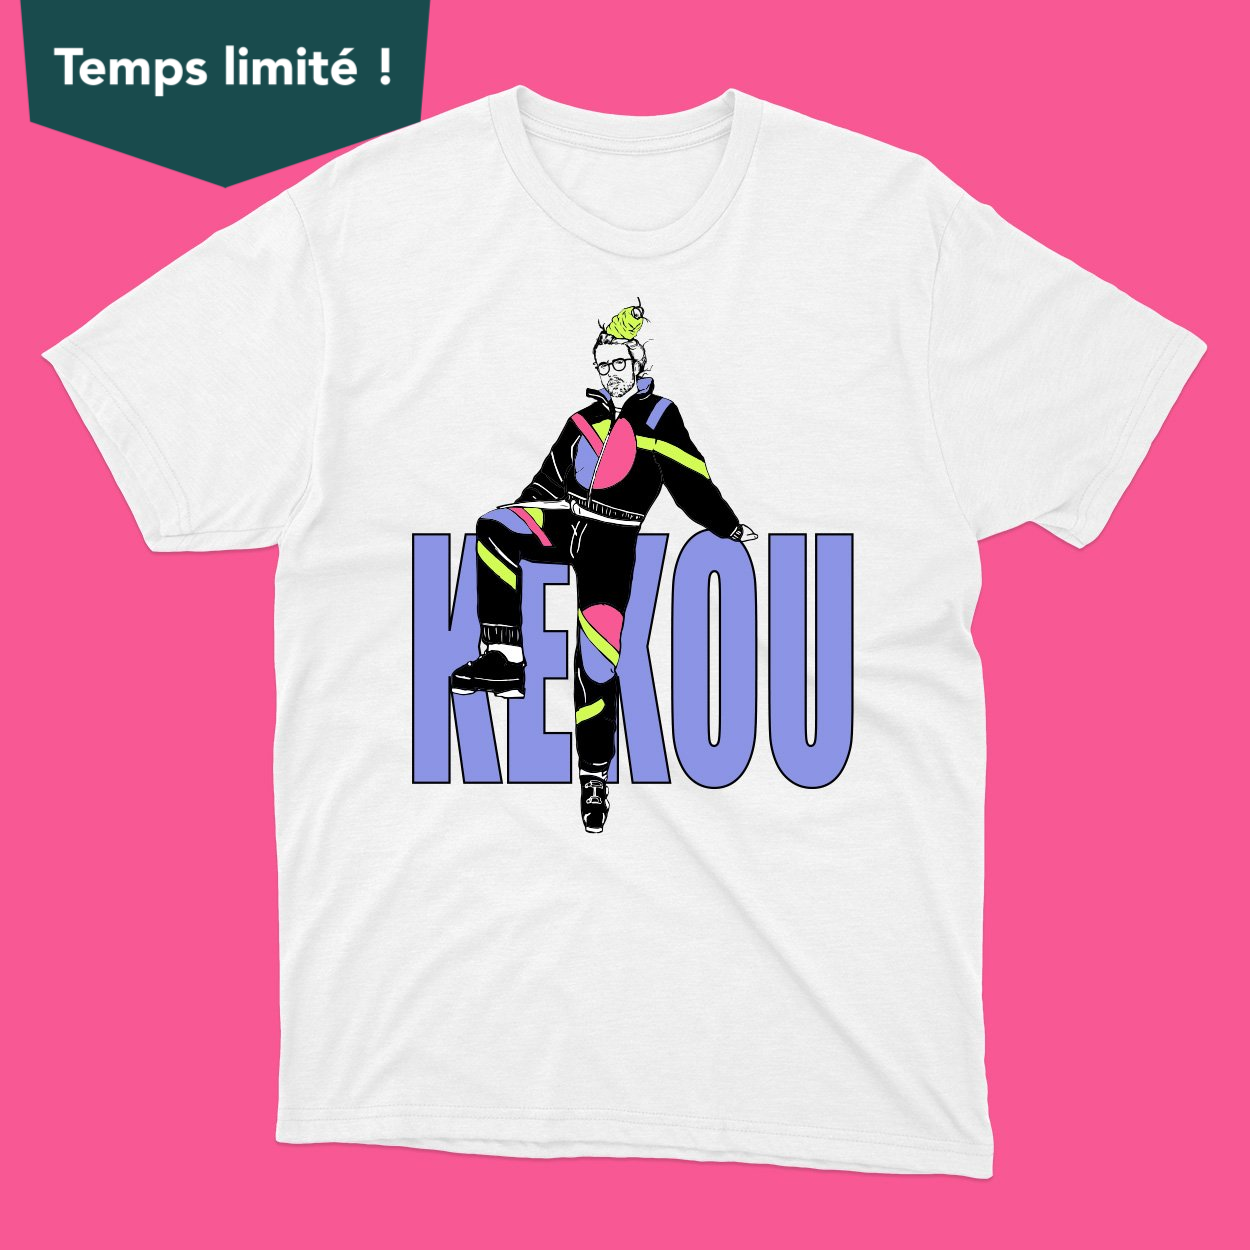 *PRÉCOMMANDE* T-shirt KEKOU (Mathieu Dufour X Juste pour rire) - Tamelo boutique